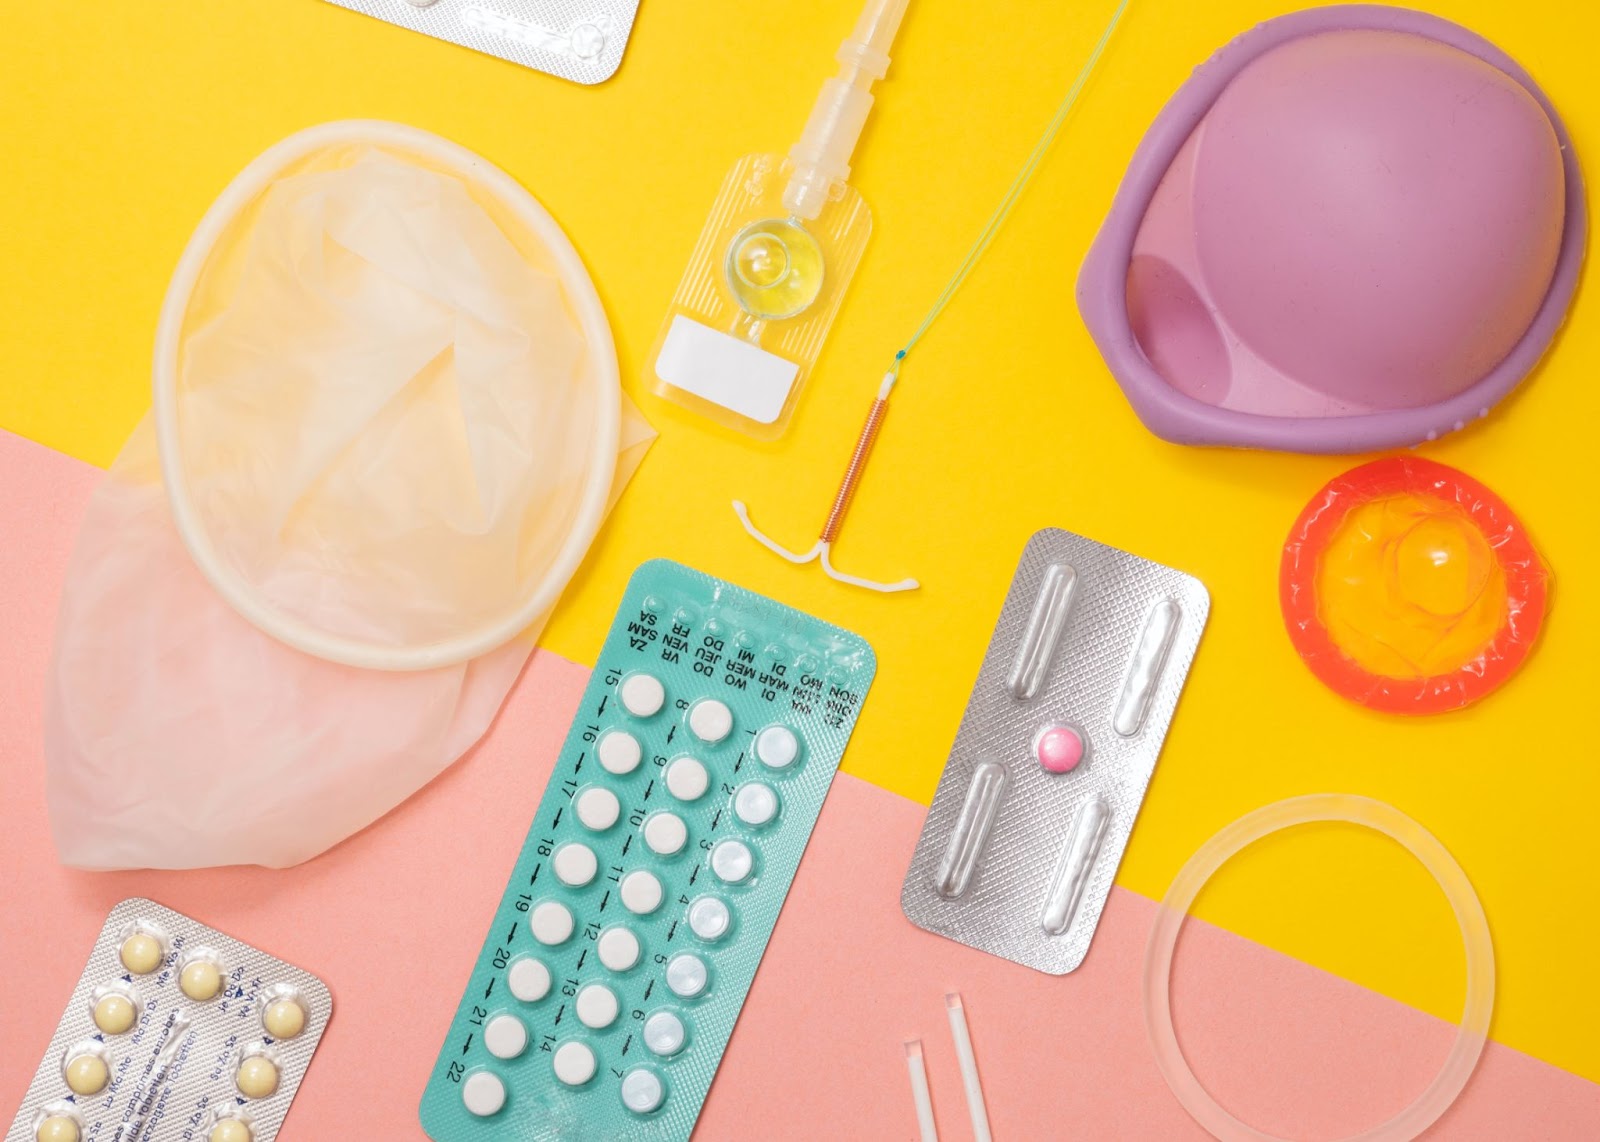 Imagem que mostra métodos contraceptivos reversíveis, que podem ser usados no lugar da laqueadura, como DIU, camisinha e pílula anticoncepcional. 